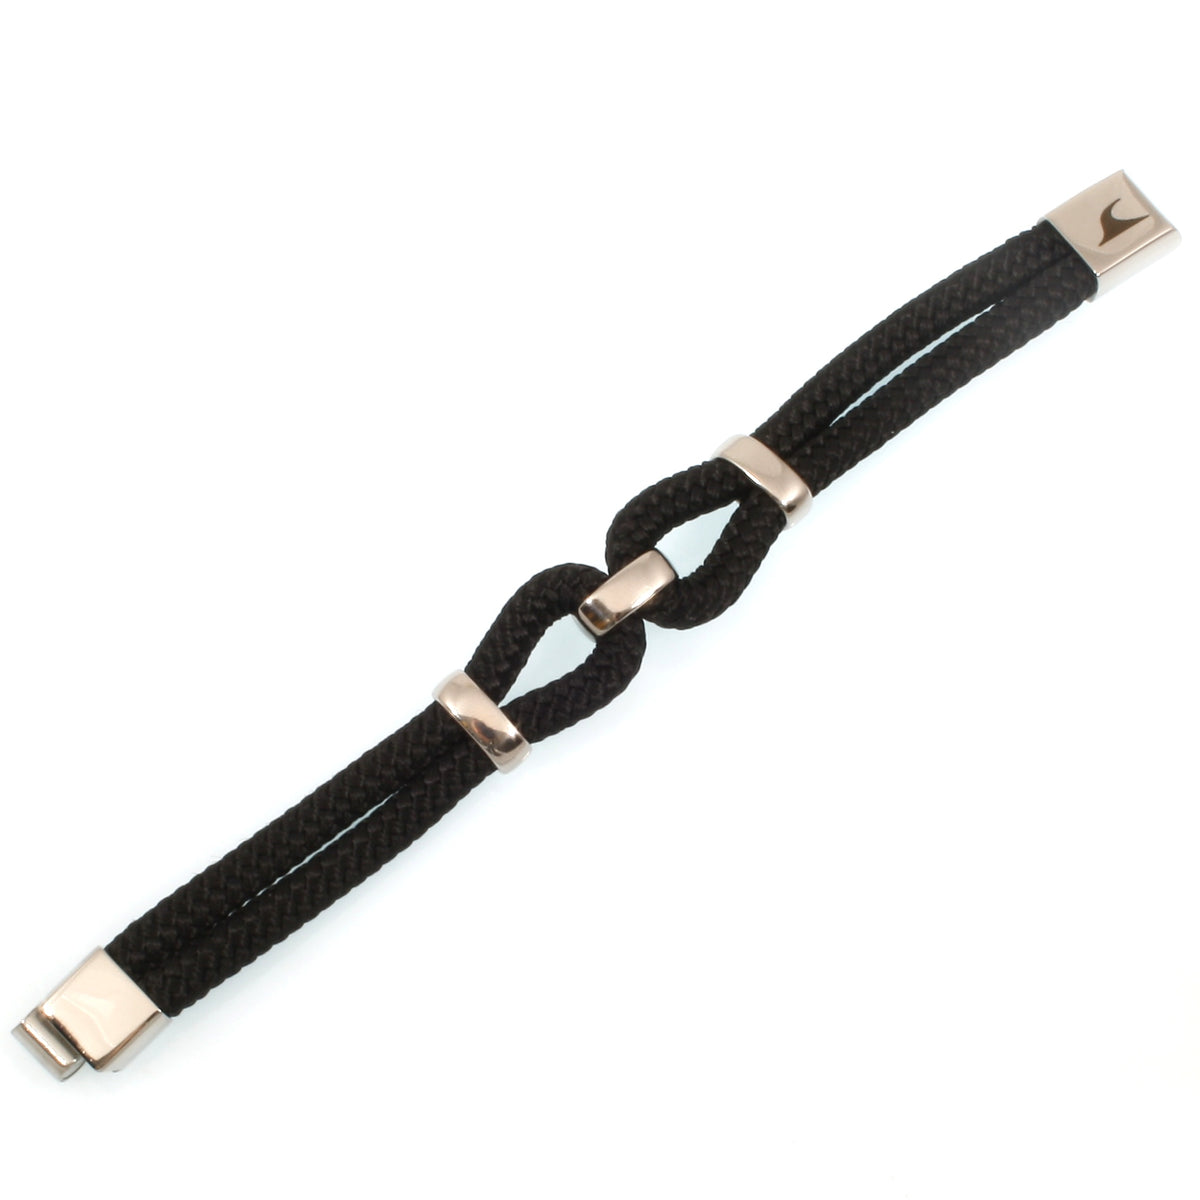 Damen-Segeltau-armband-roma-schwarz-geflochten-Edelstahlverschluss-detail-wavepirate-shop-st